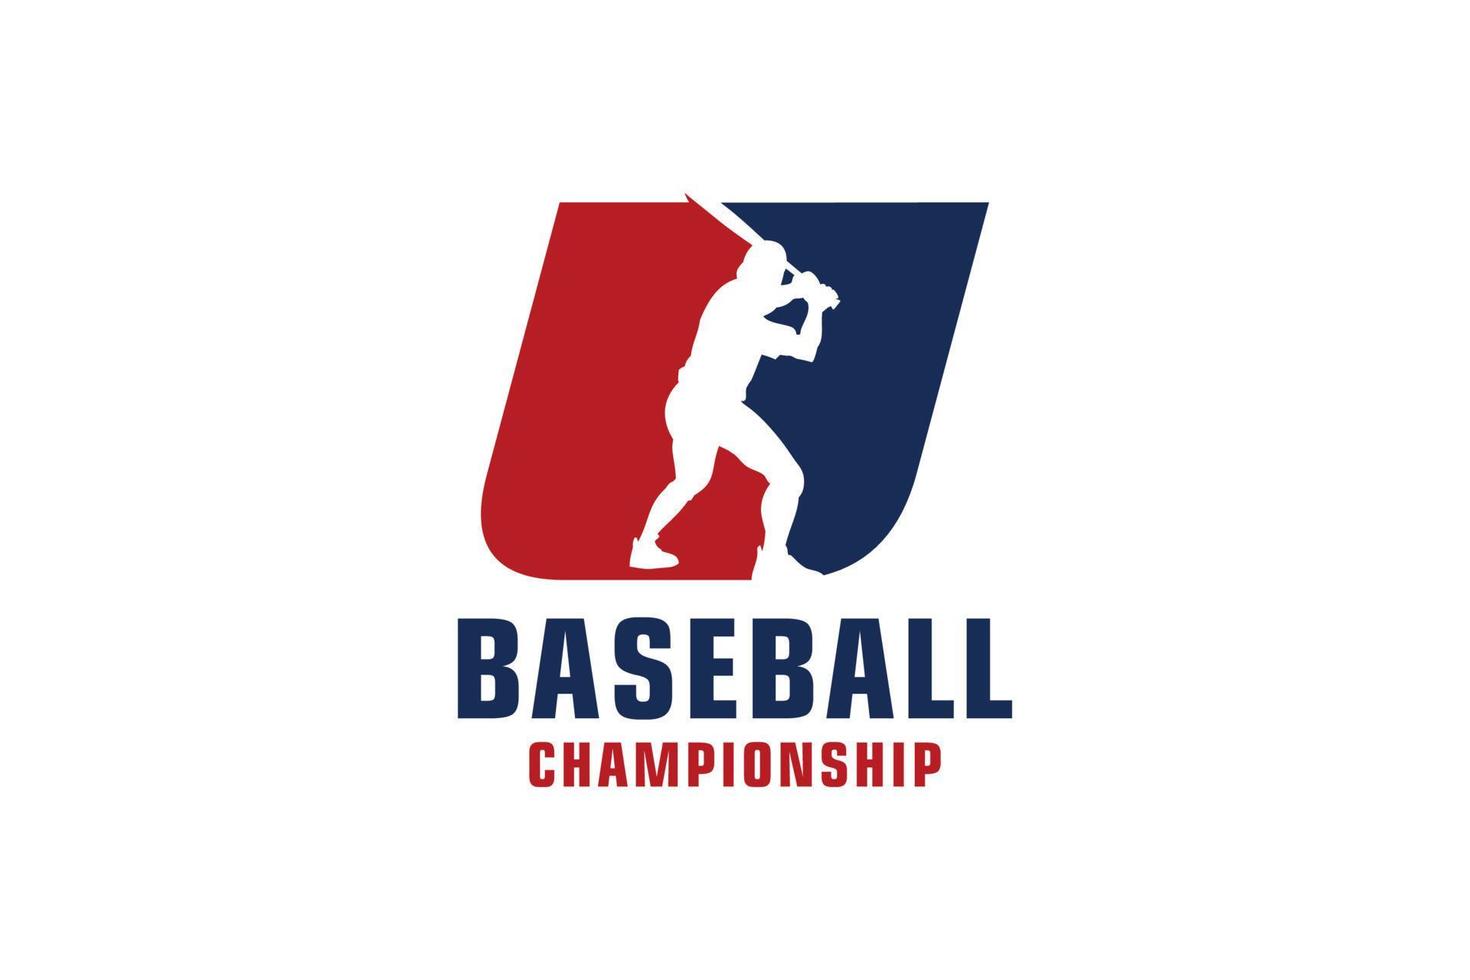 bokstaven u med design av baseballlogotyp. vektor designmallelement för sportlag eller företagsidentitet.